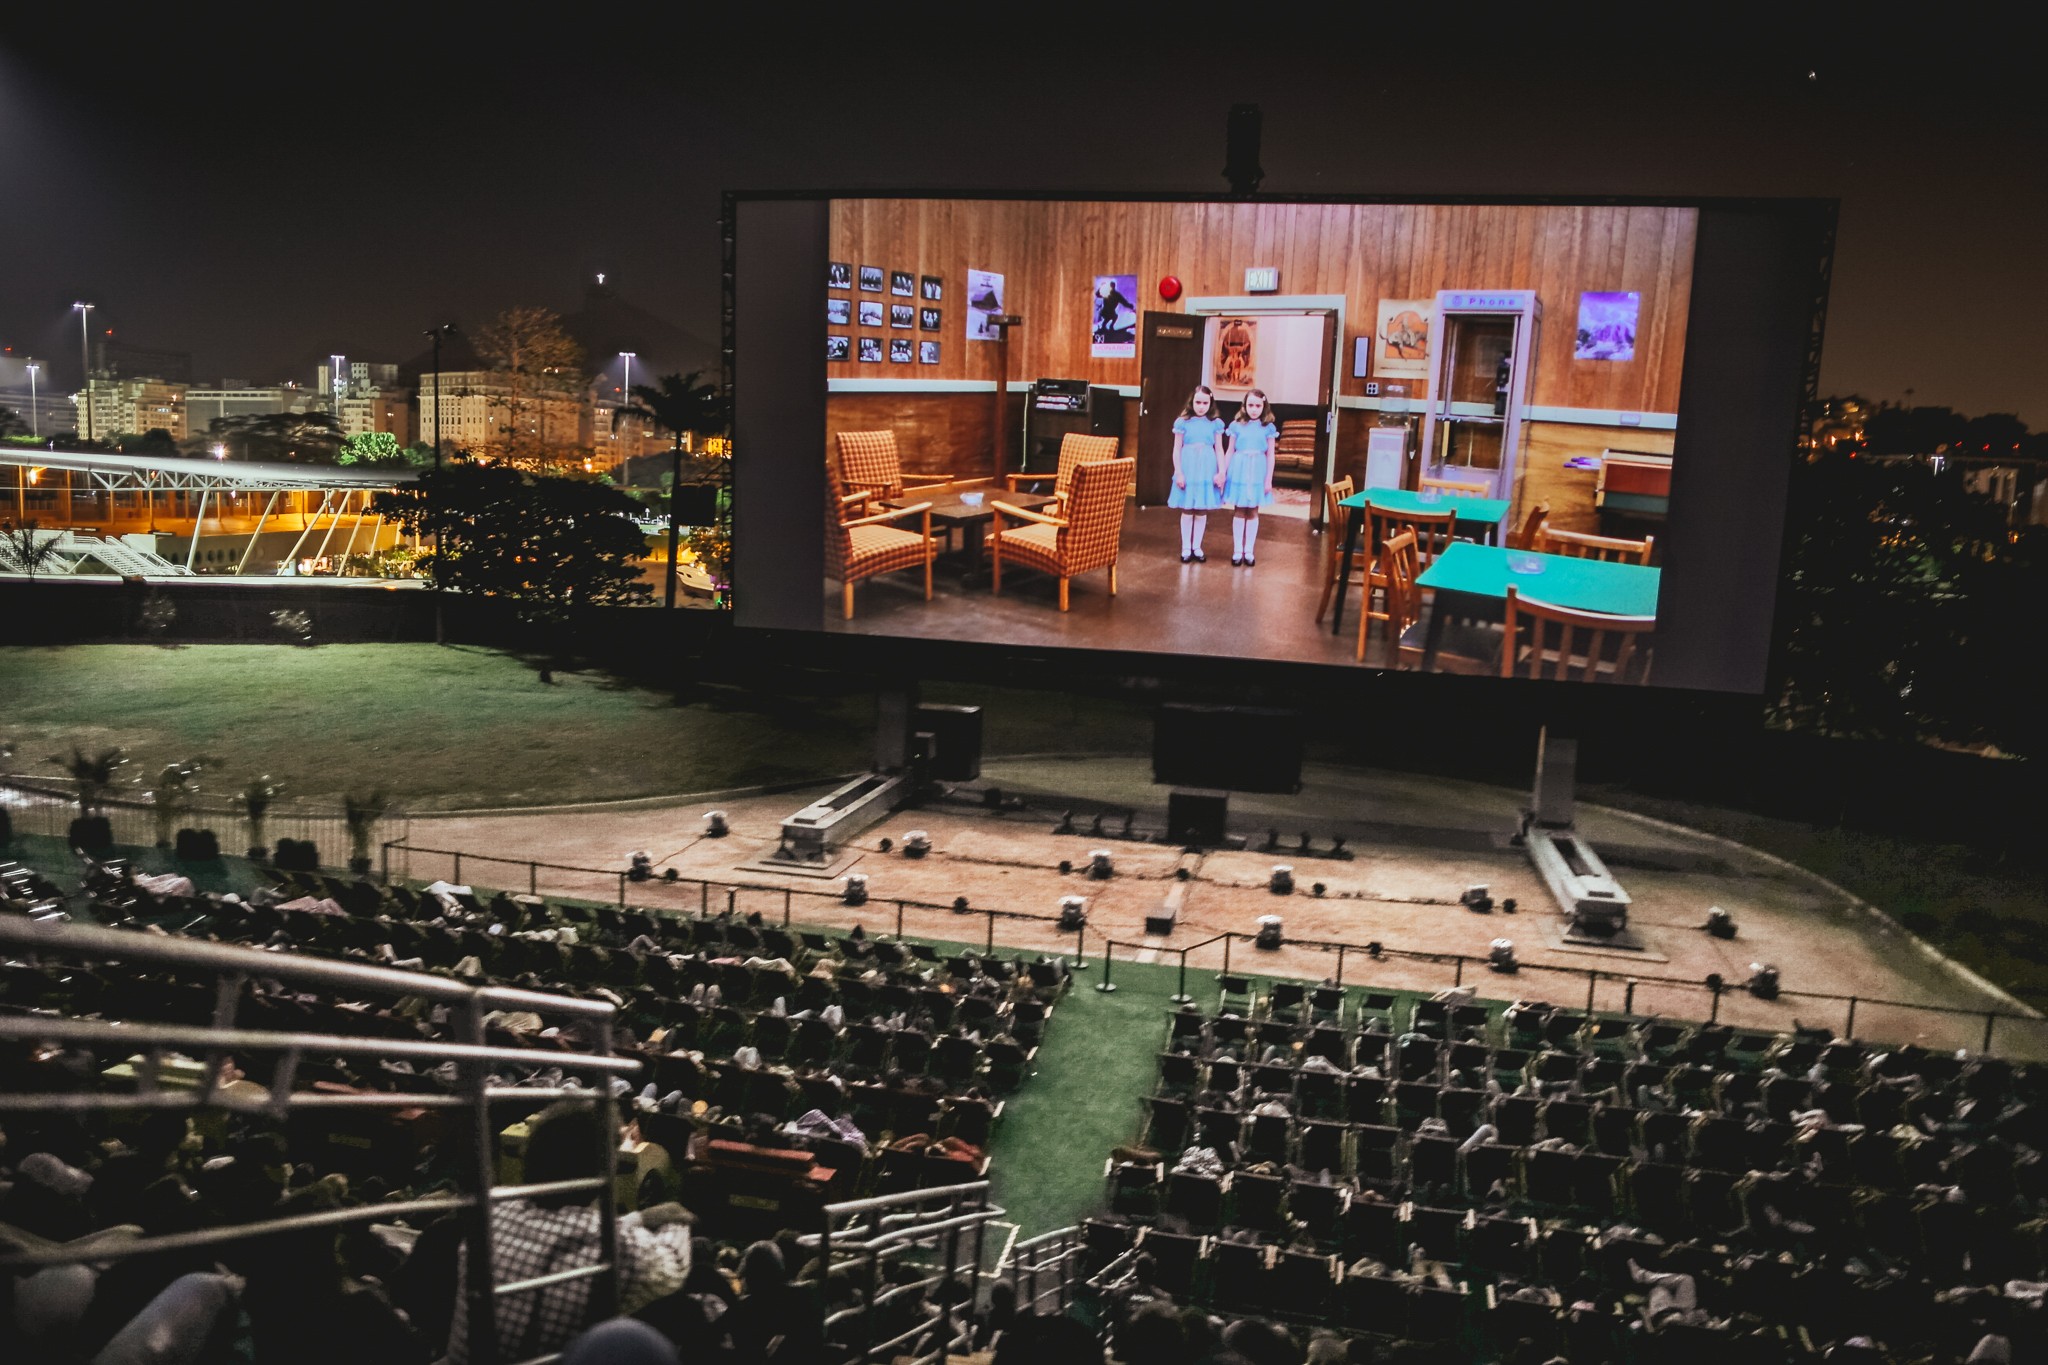 Cinema a céu aberto Shell Open Air que será montado em São Paulo em setembro (Foto: Aldo Barranco/Divulgação)